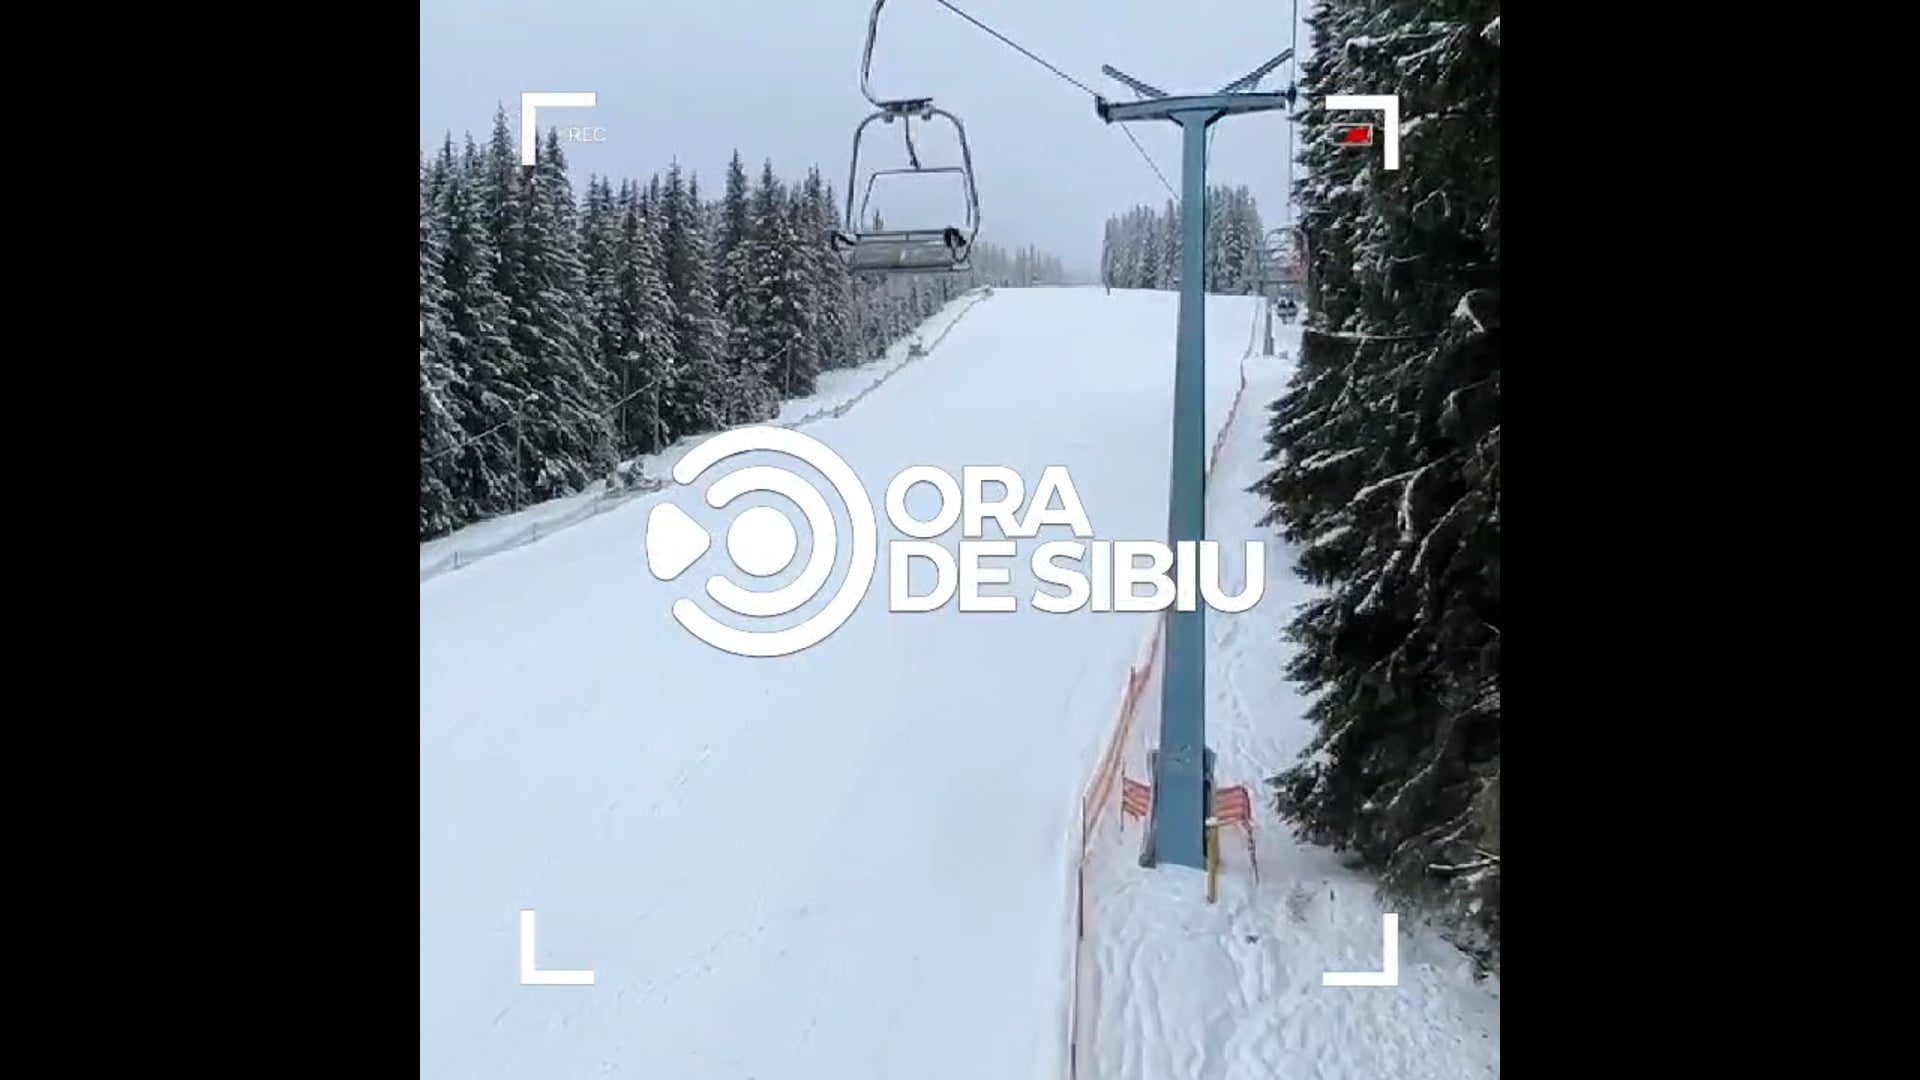 S-a deschis pârtia Oncești - Oficial a început noul sezon de schi